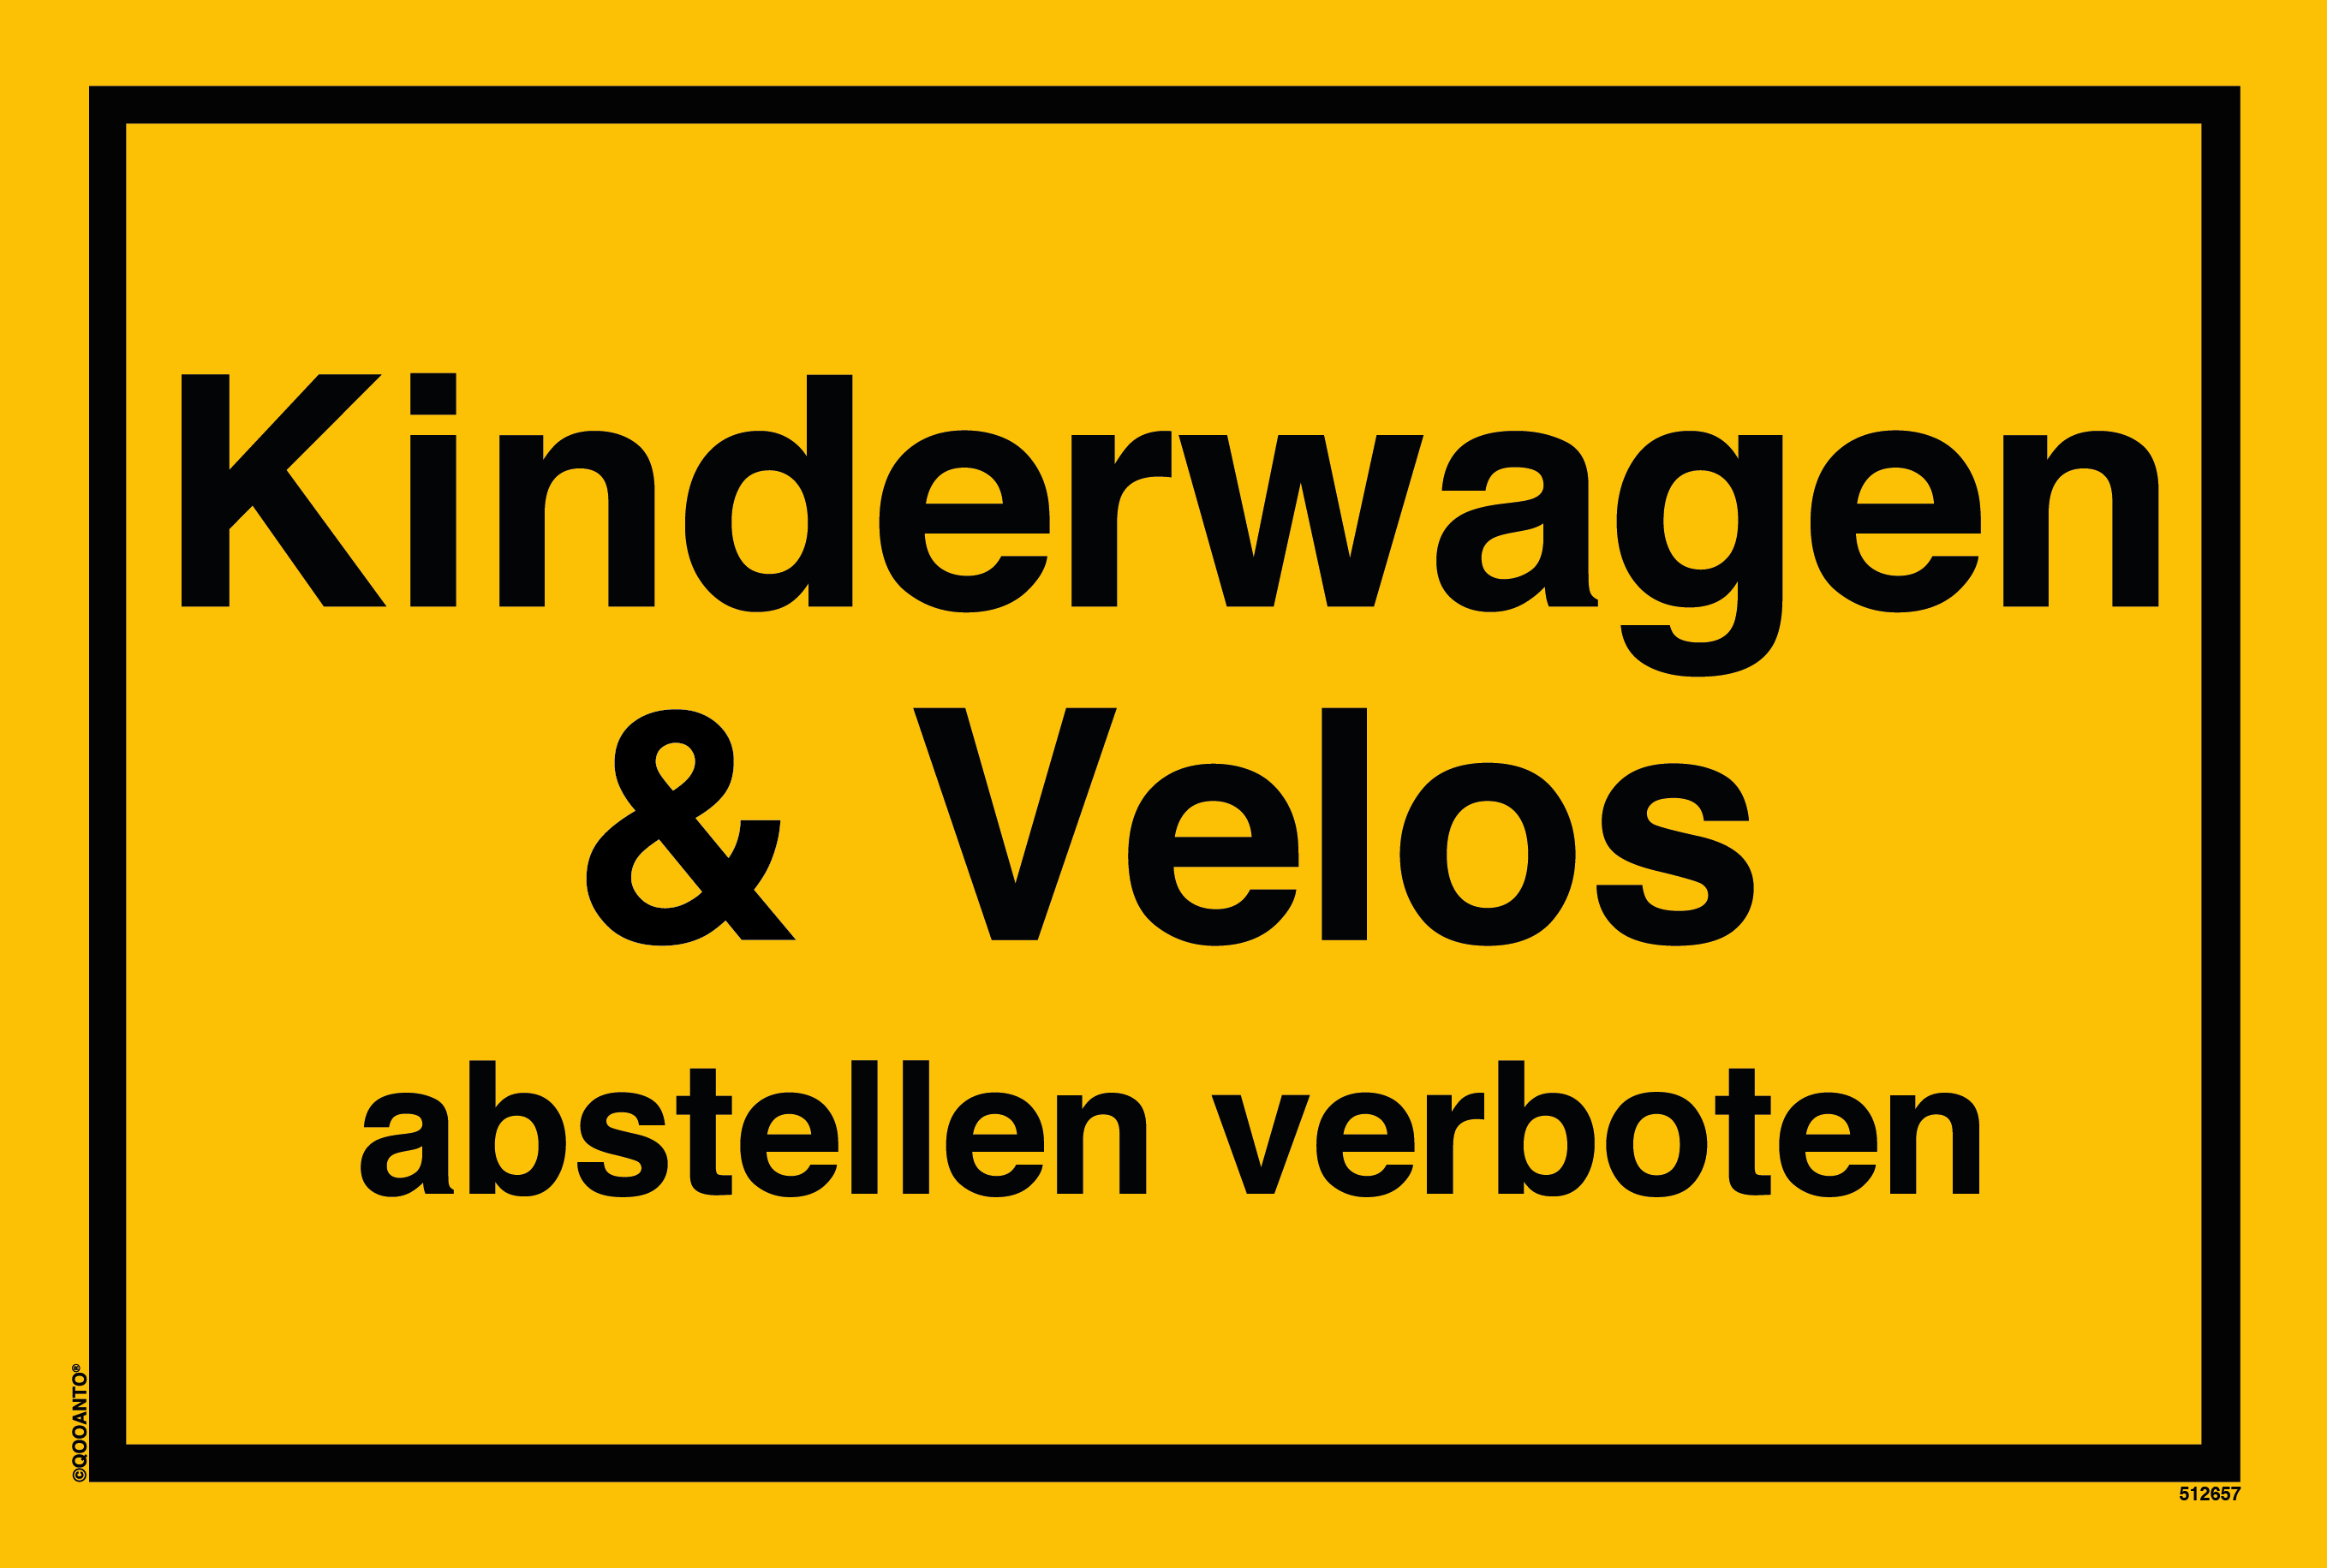 Kinderwagen & Velos abstellen verboten, gelb, Schild